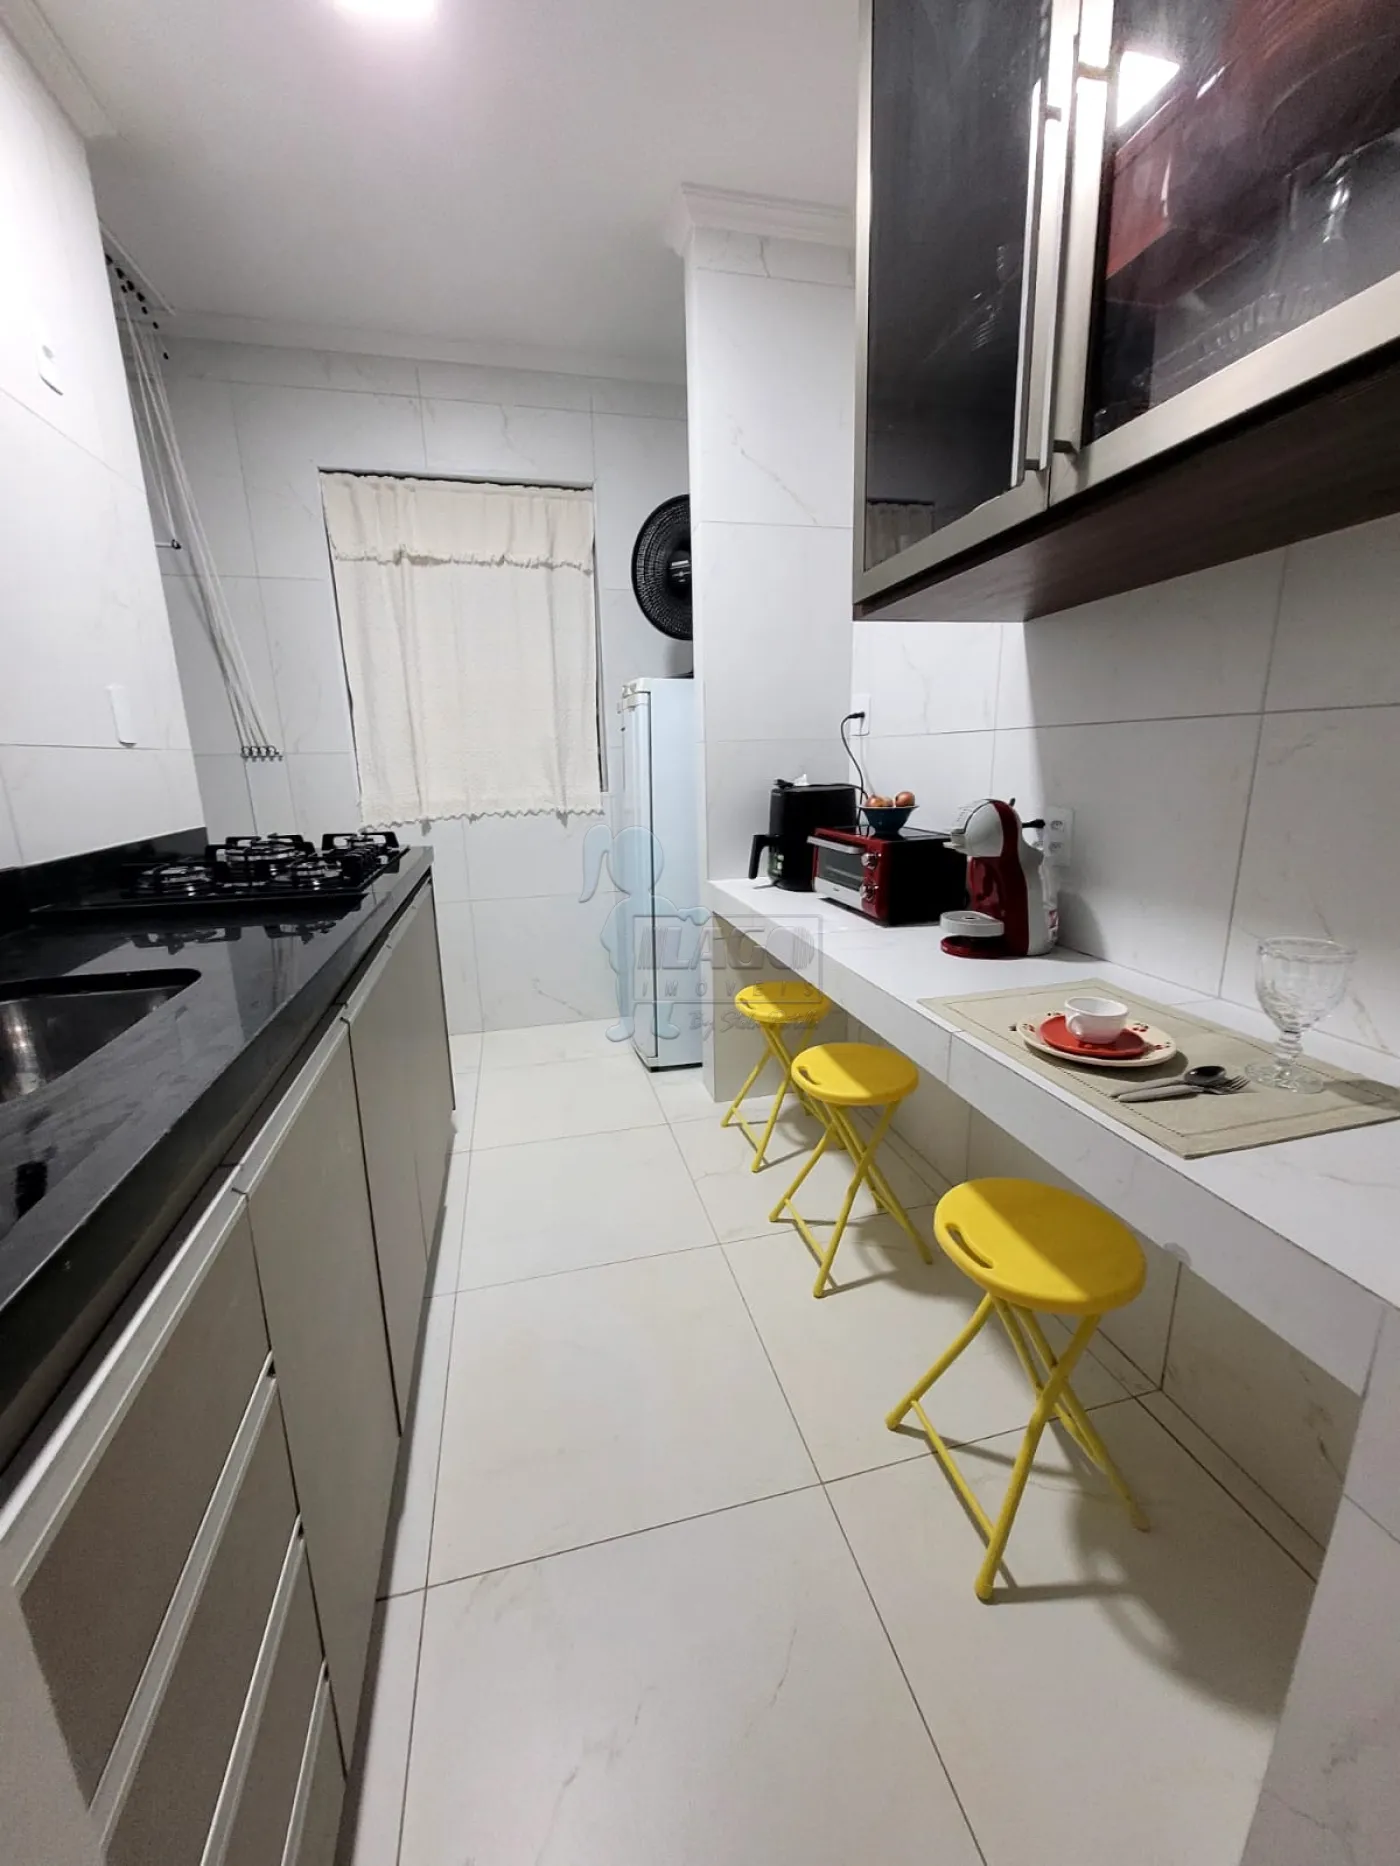 Comprar Apartamento / Padrão em Ribeirão Preto R$ 115.000,00 - Foto 18